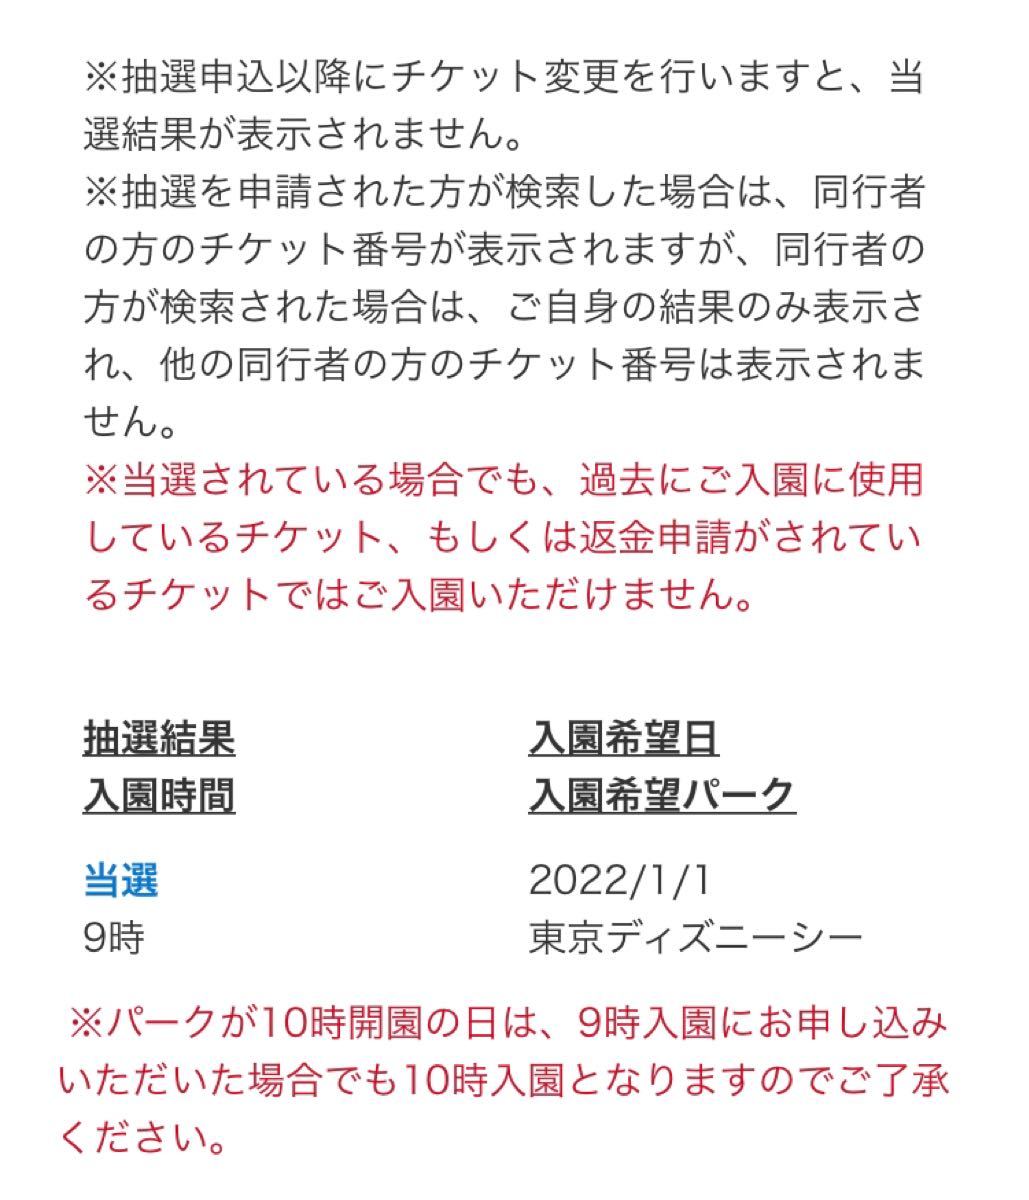 4枚 チケット番号事前通知 ディズニーパスポート 23 1 31迄 ディズニーチケット 未抽選 Kansaikankyo Group Co Jp